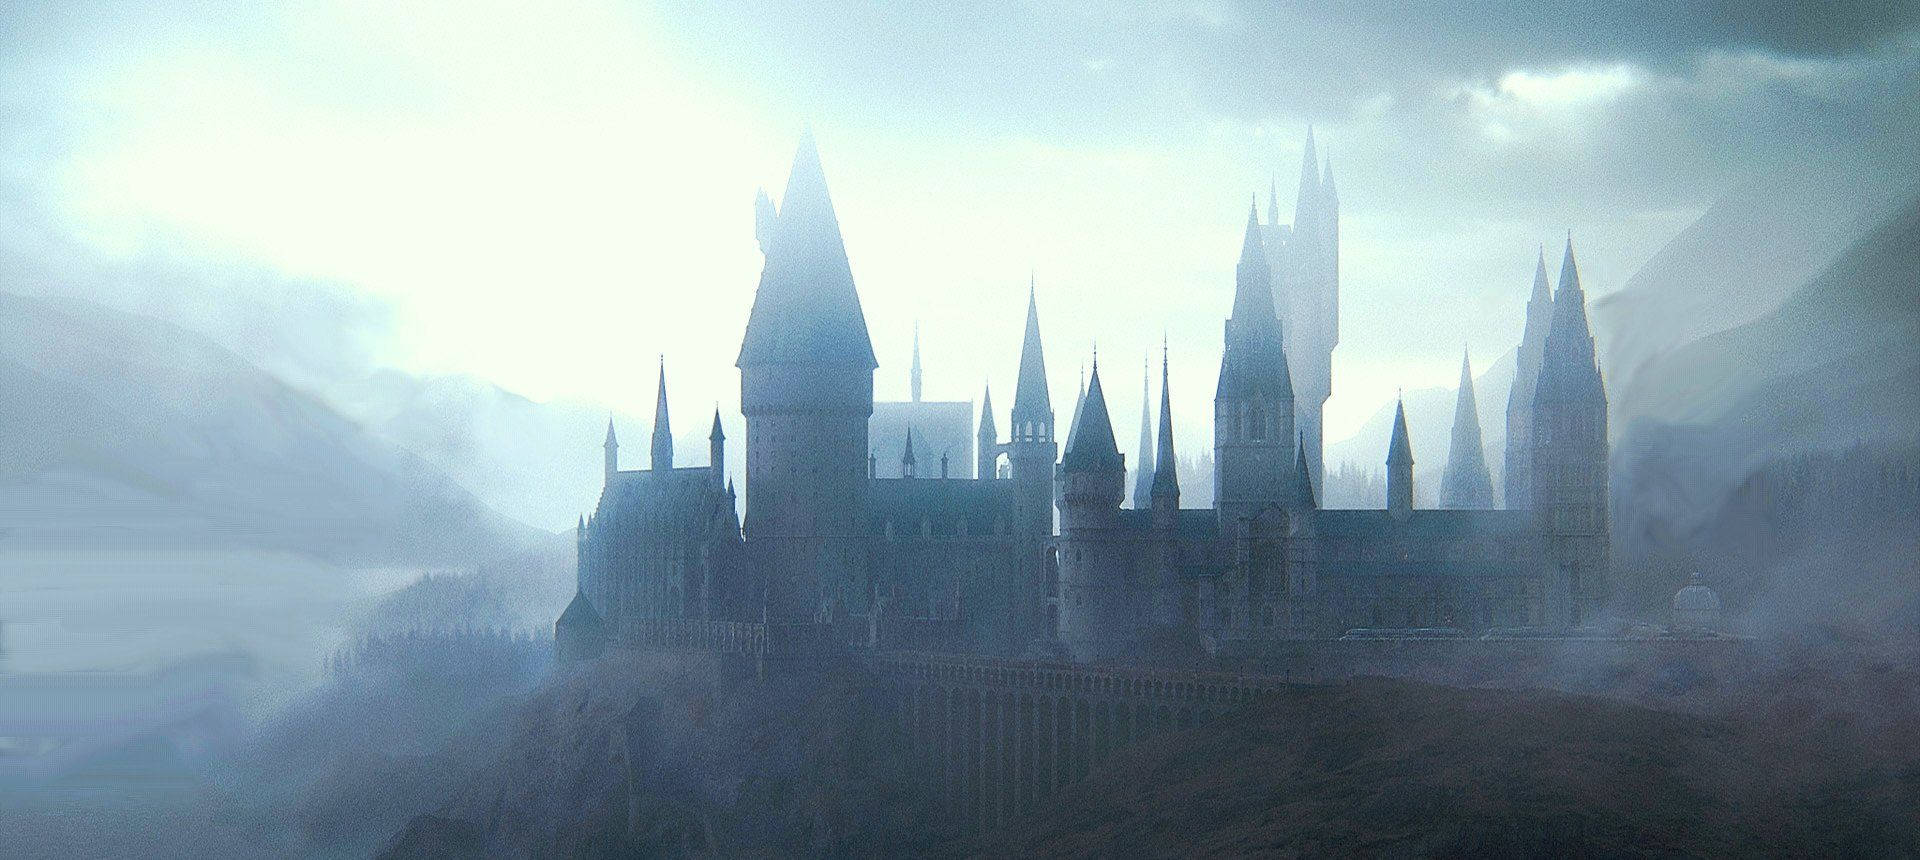 Hogwarts Castle Standing in Ethereal Splendor Wallpaper